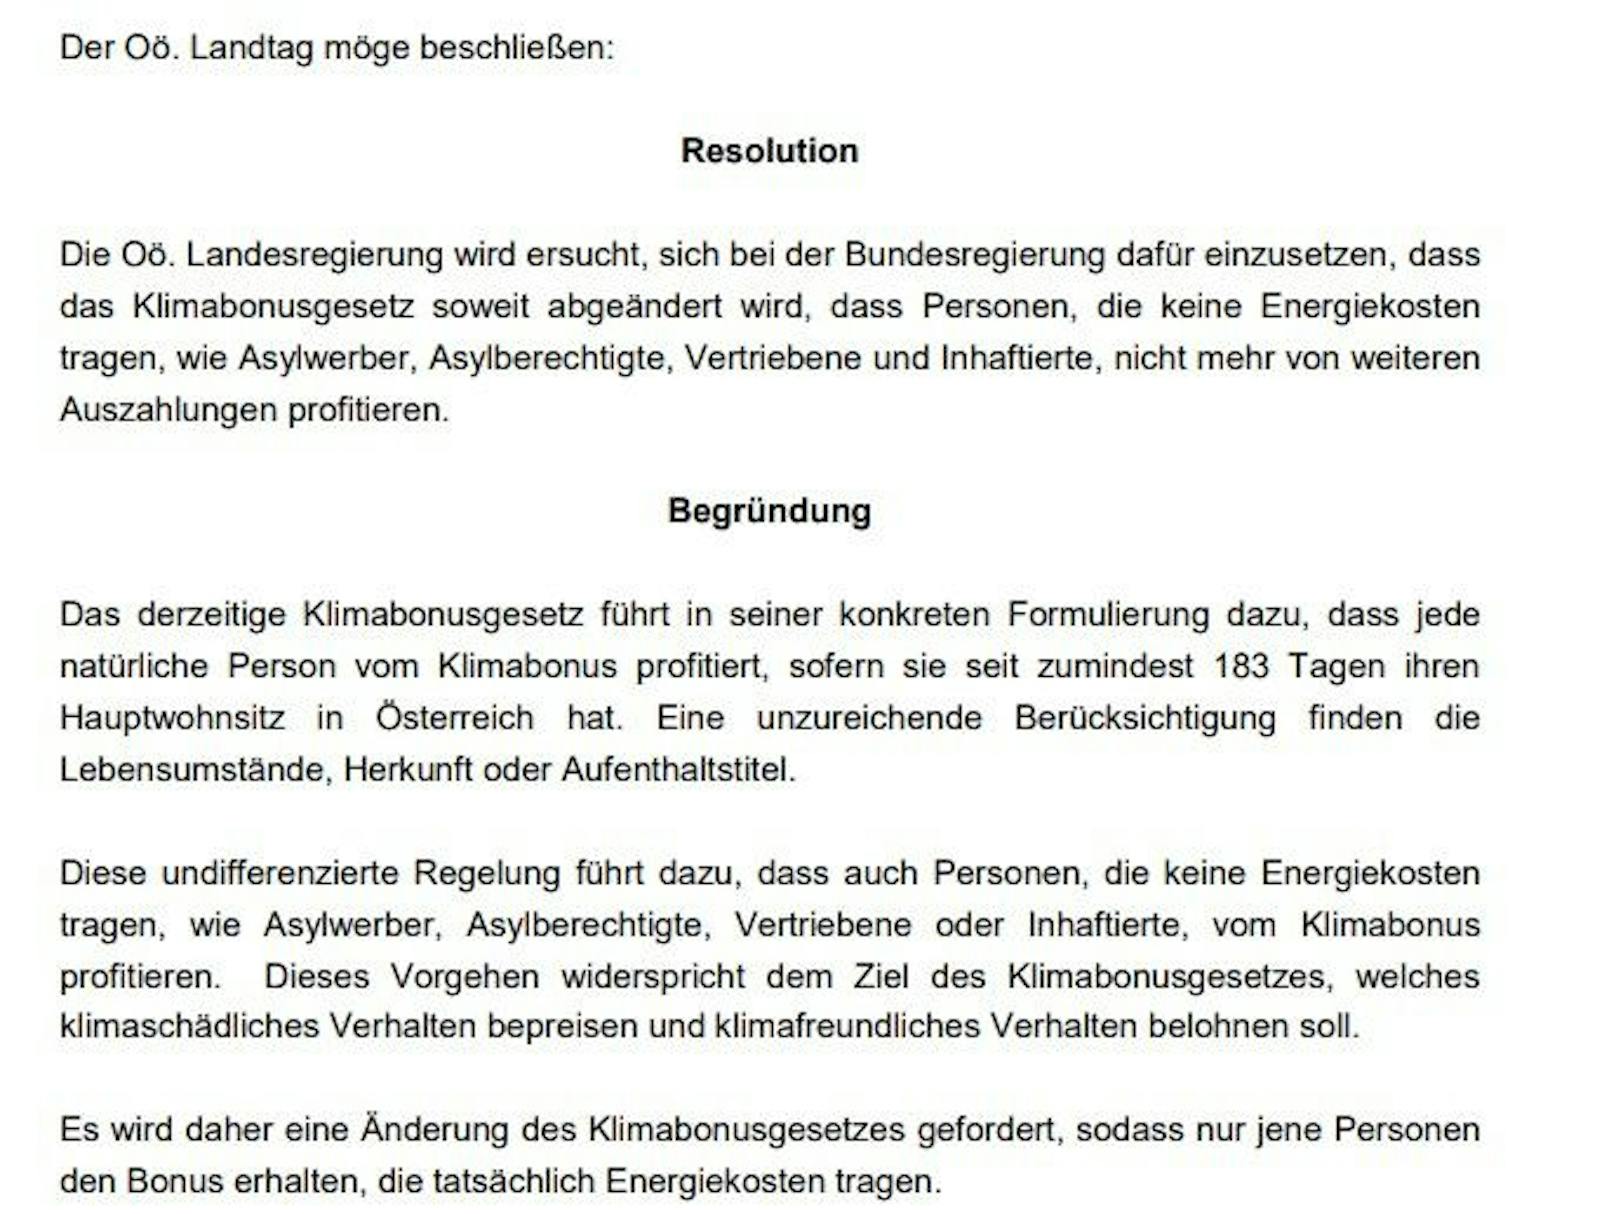 Diesen Antrag brachten die Freiheitlichen am Donnerstag im Landtag in OÖ ein. Die SPÖ stimmte überraschend zu.